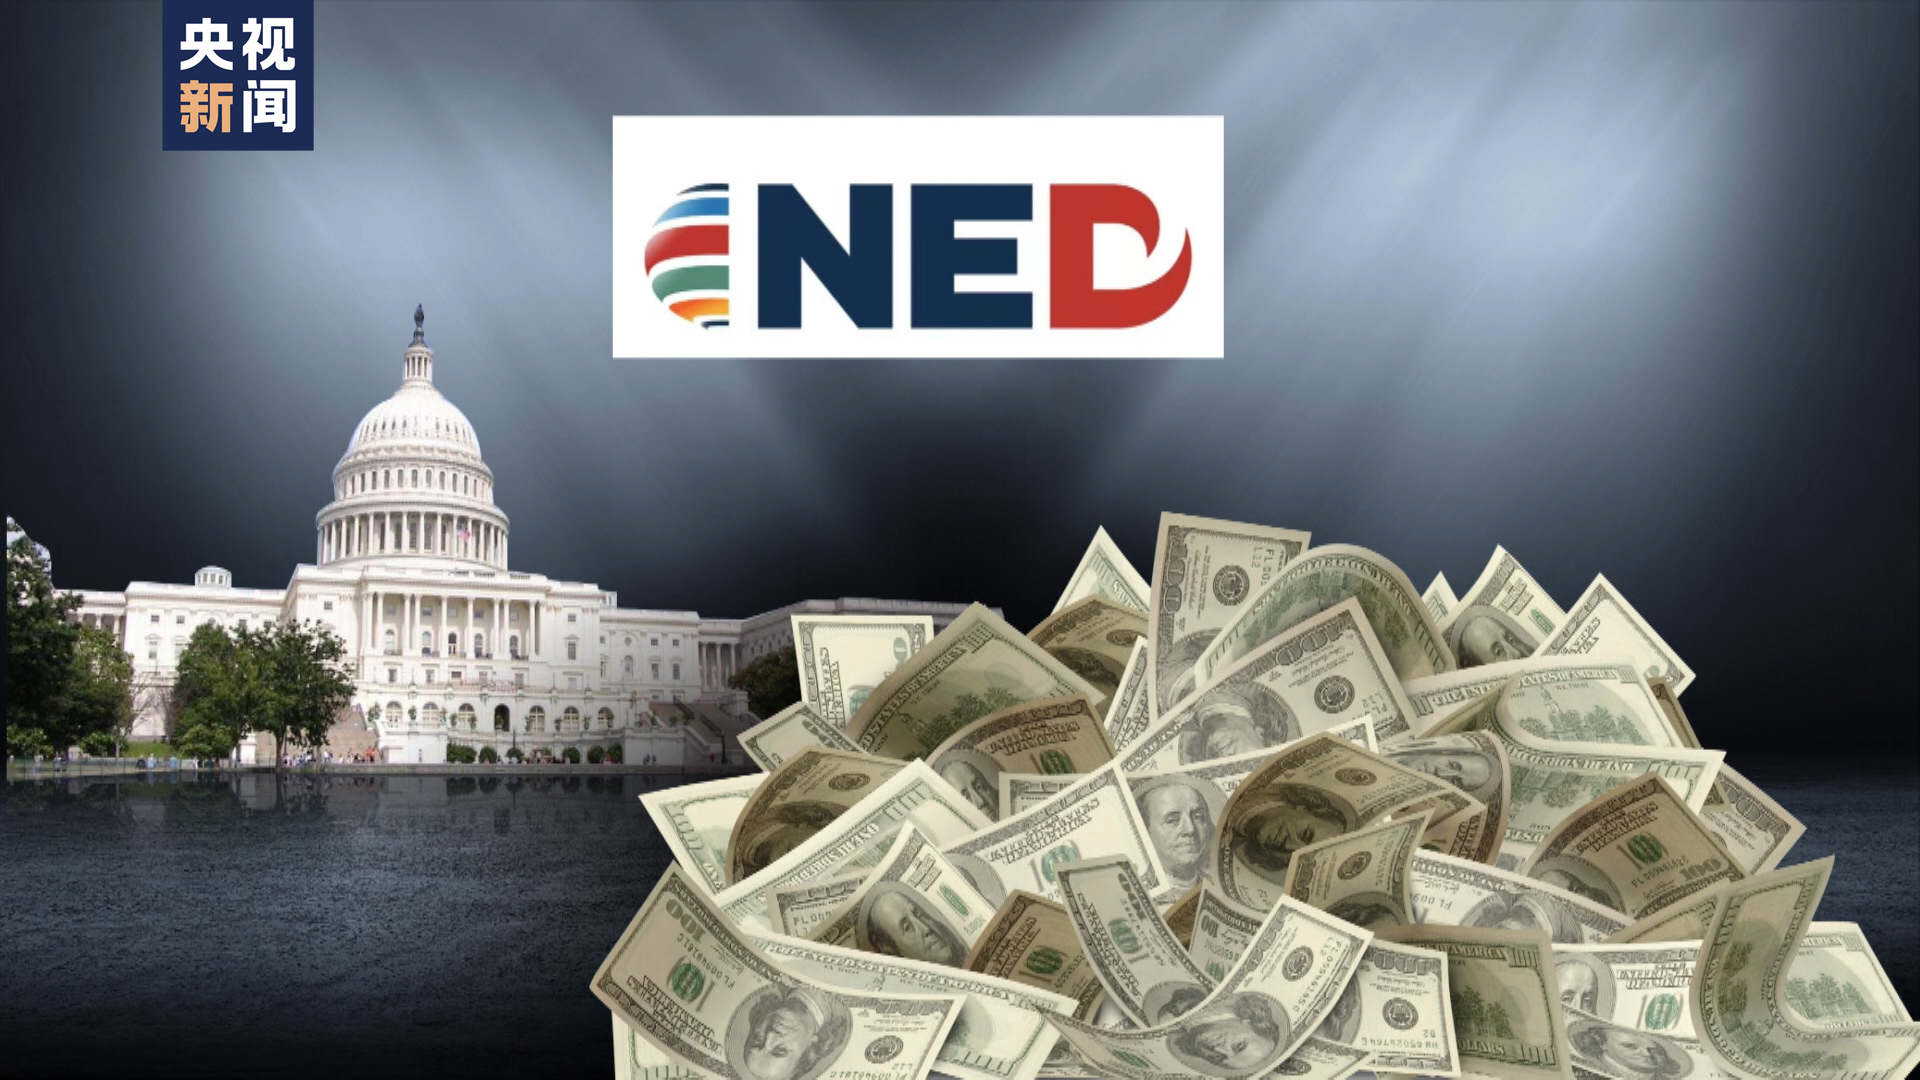 图丨NED的资金绝大多数来自于美国政府以及国会的相关拨款